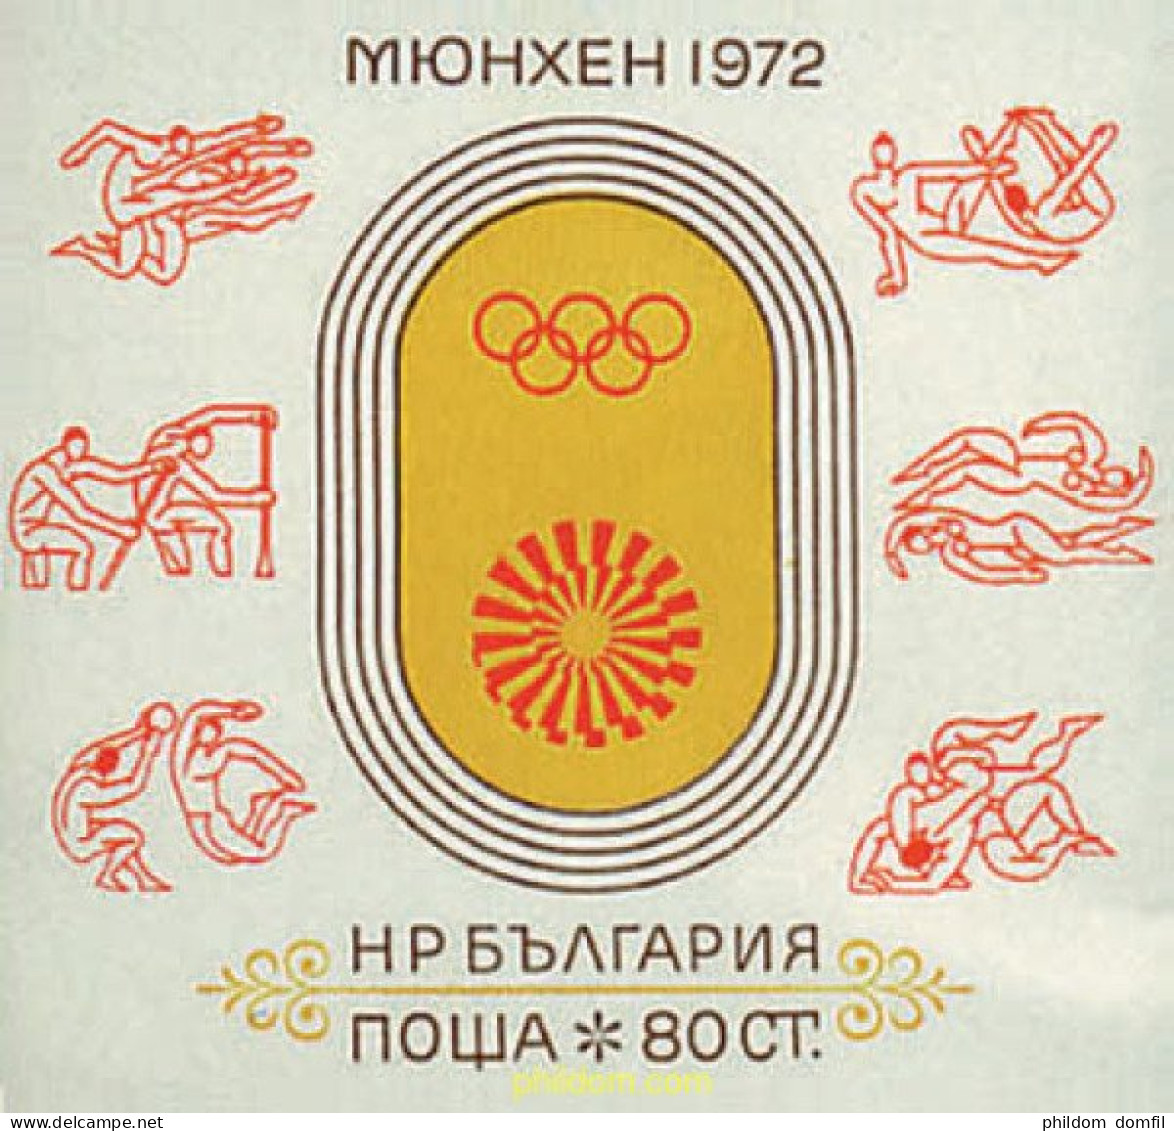 81459 MNH BULGARIA 1972 20 JUEGOS OLIMPICOS VERANO MUNICH 1972 - Unused Stamps